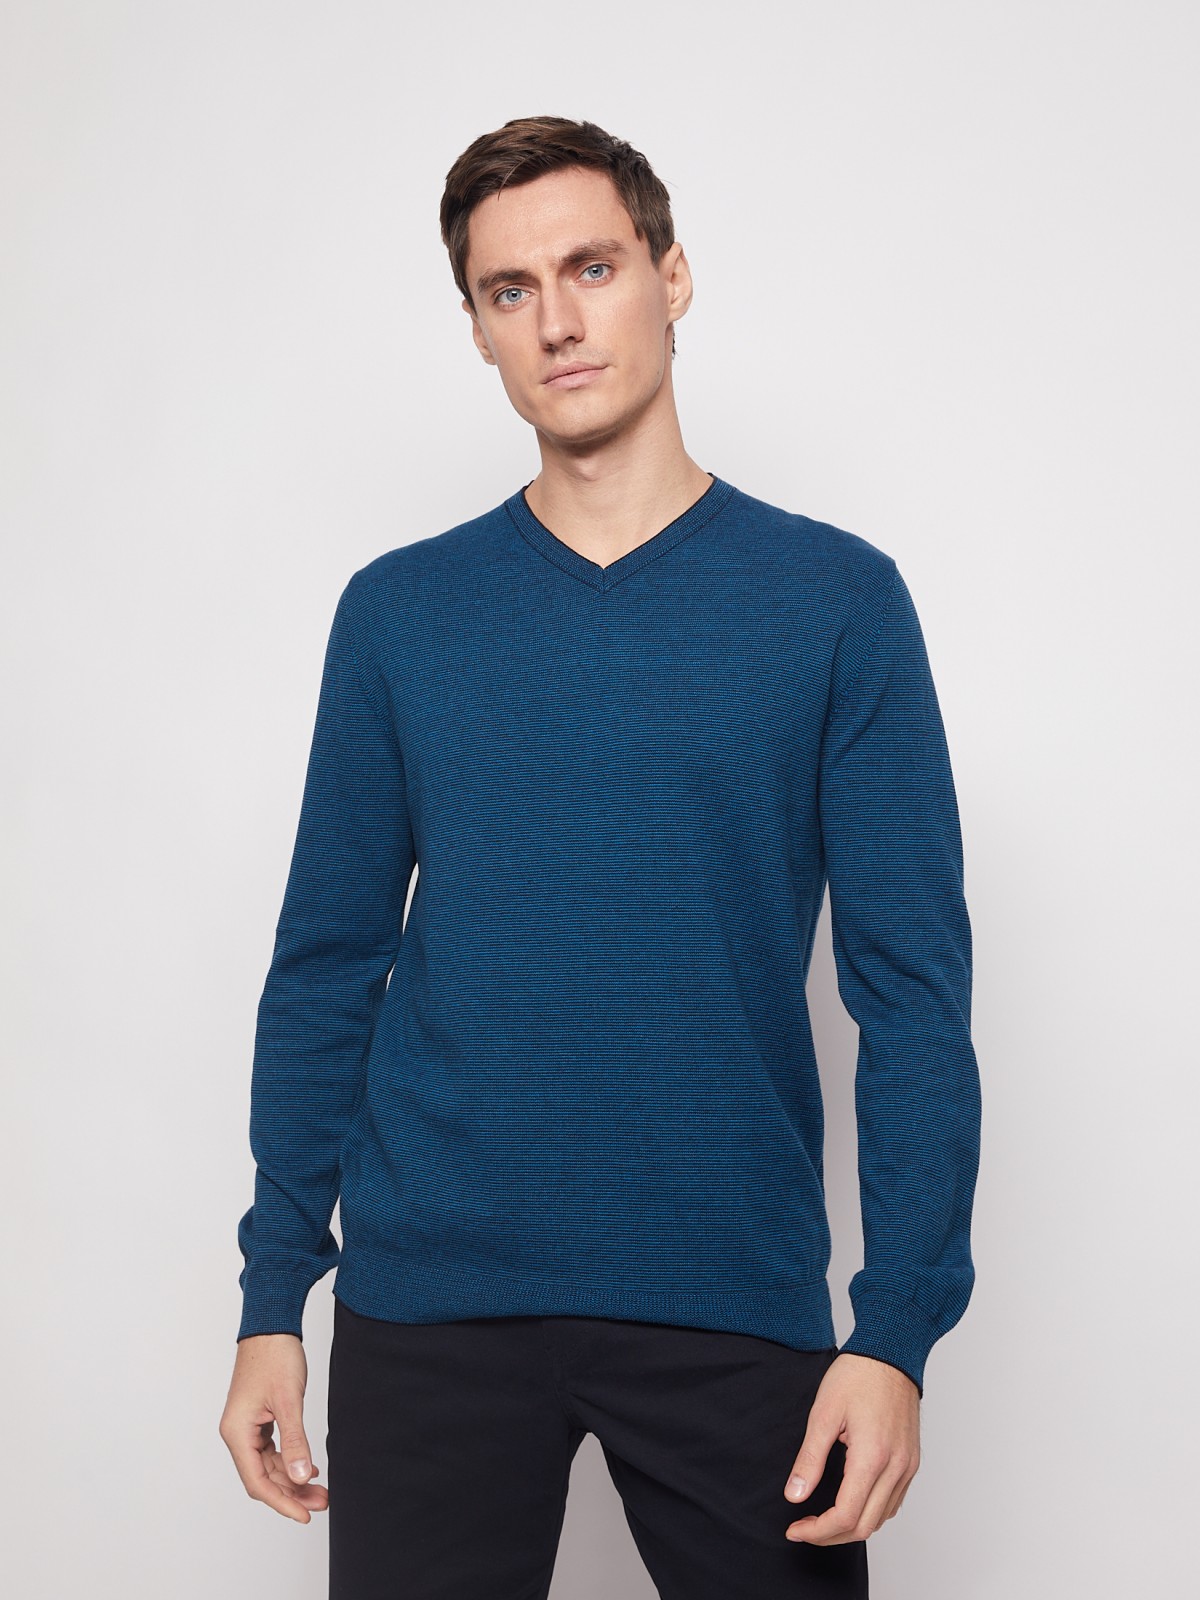 Пуловер с V-образным вырезом zolla 012116163162, цвет темно-бирюзовый, размер M - фото 2